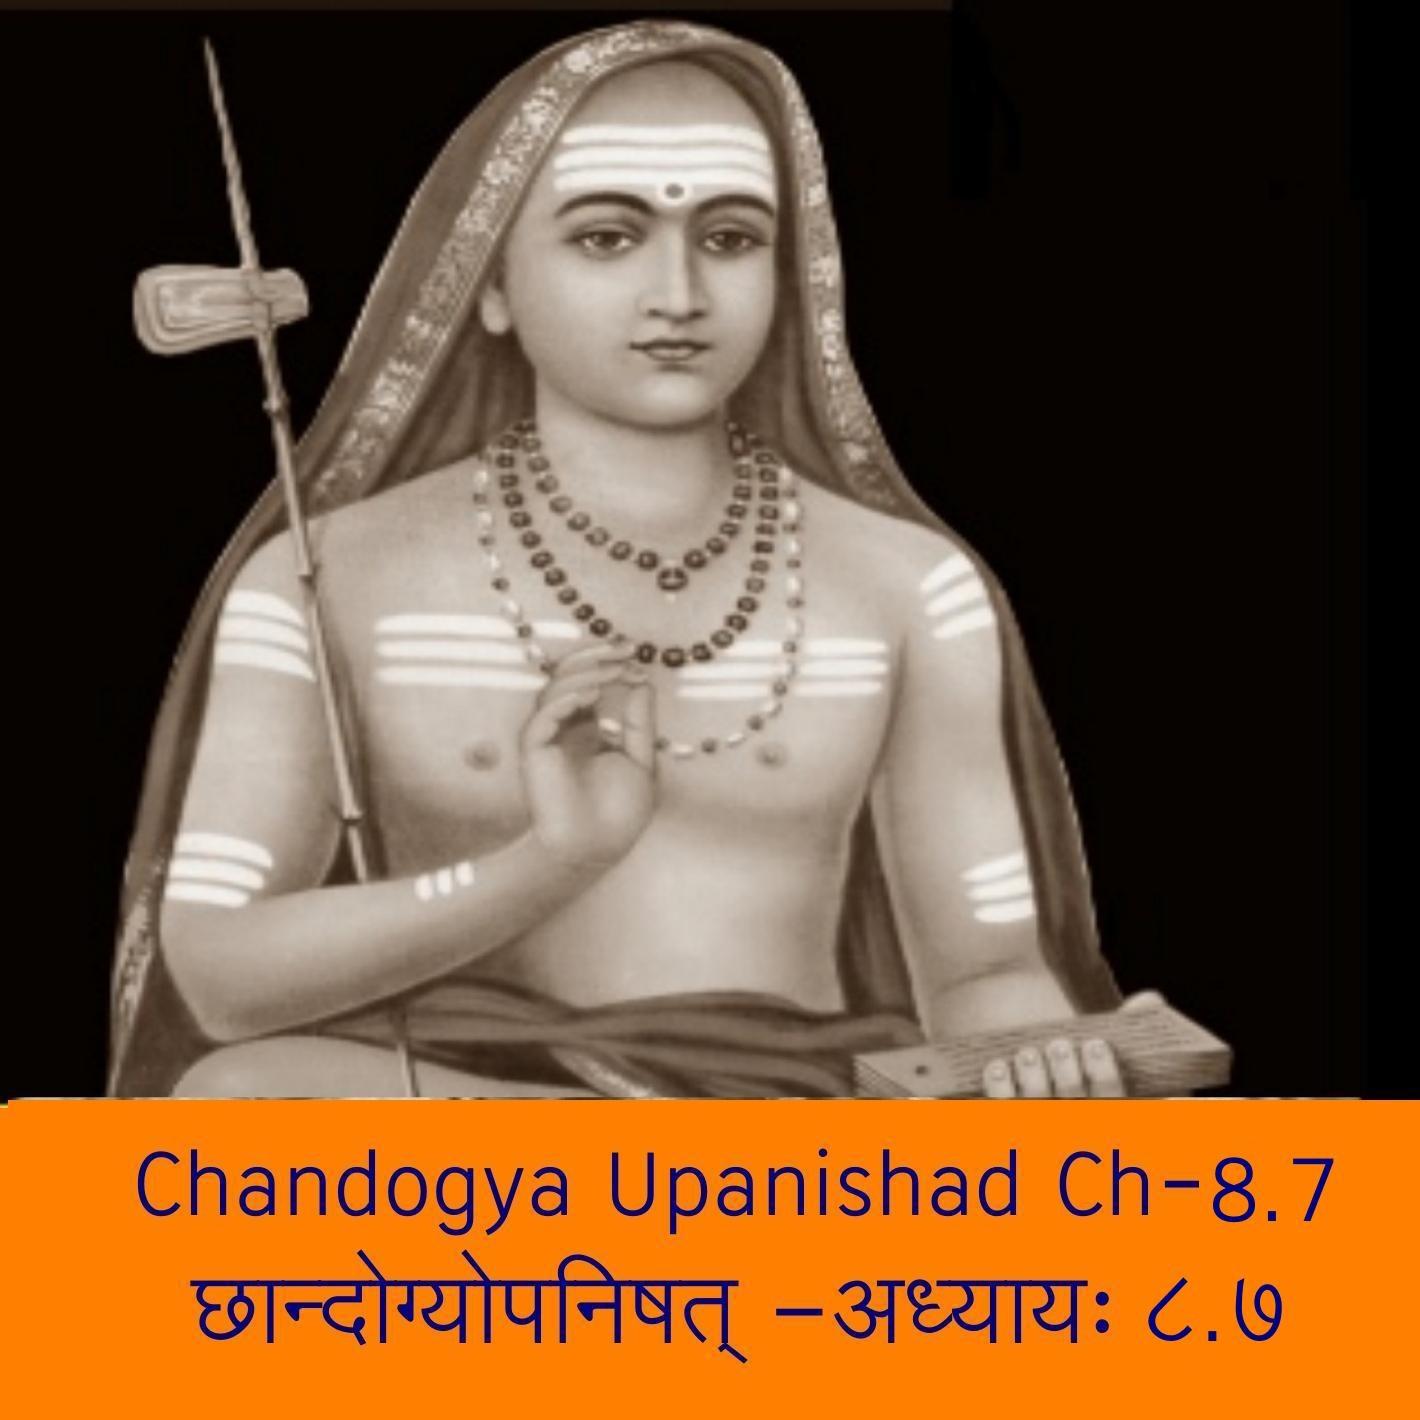 Chandogya Upanishad Ch-8.7